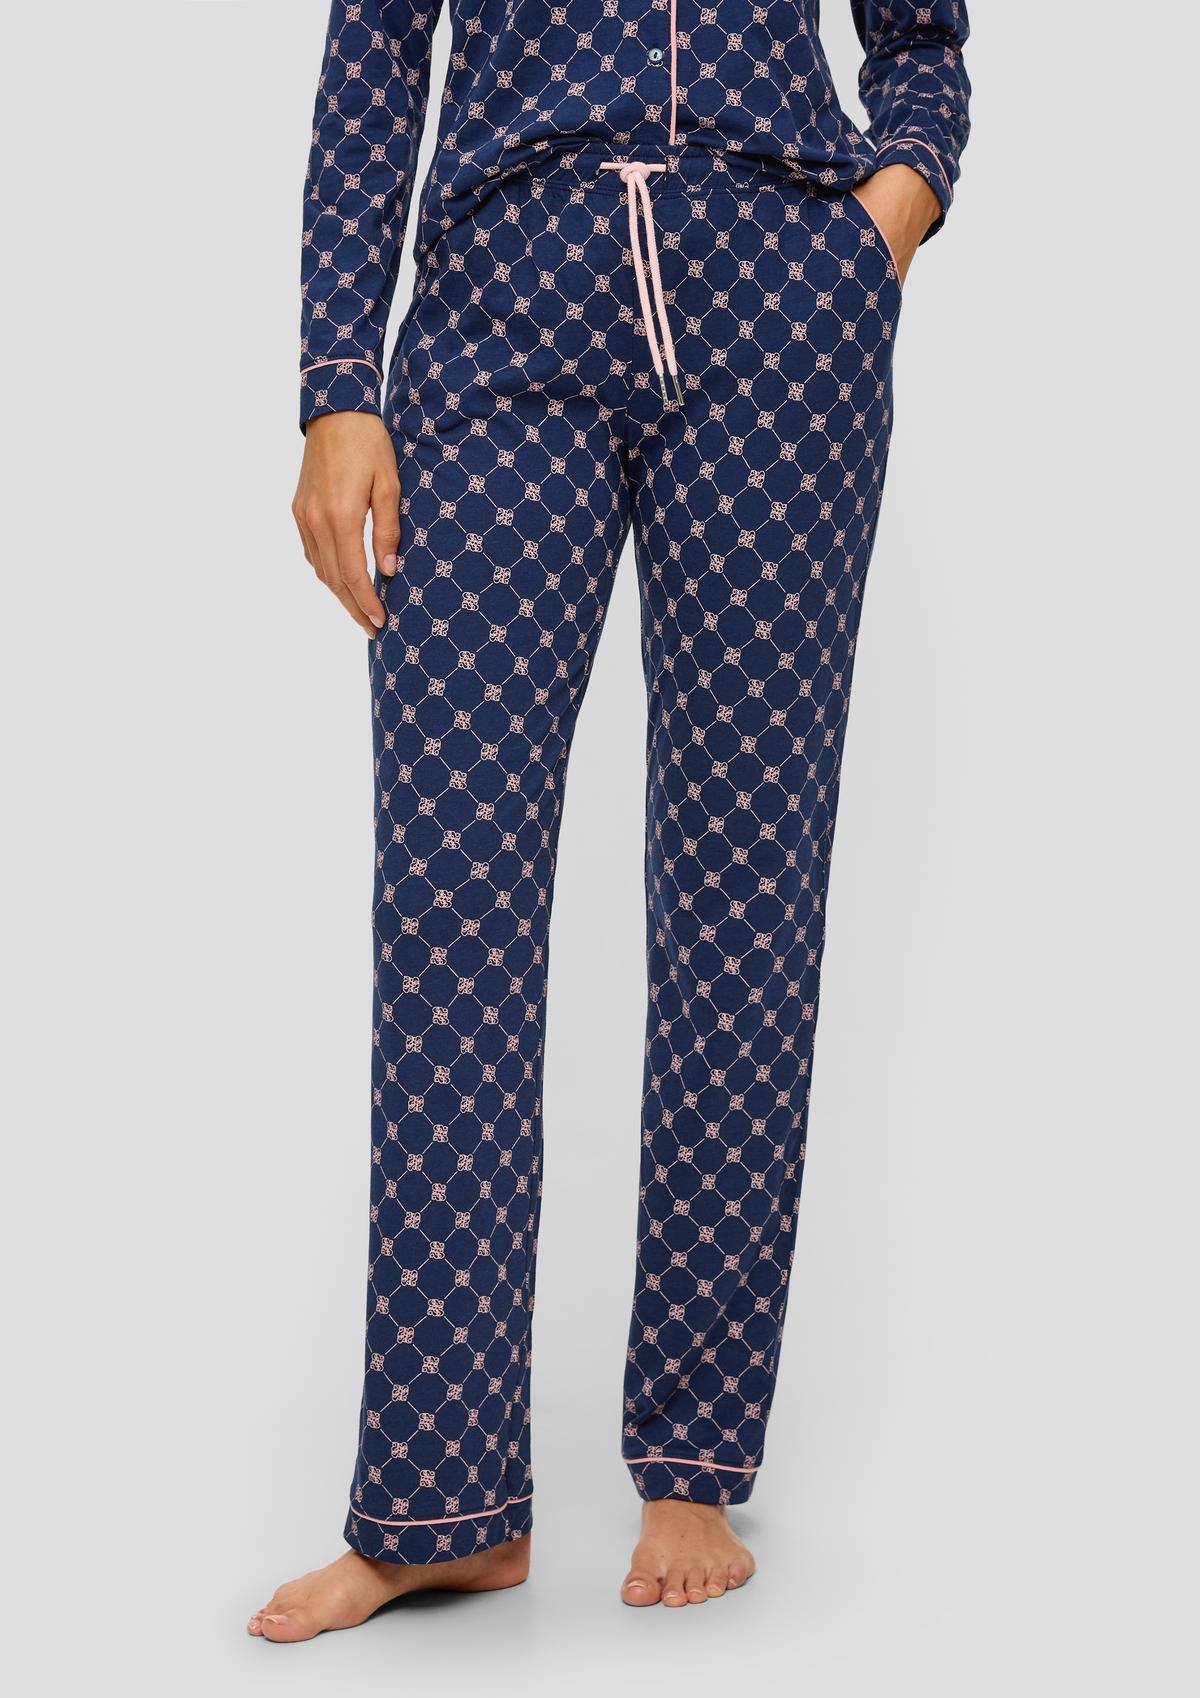 Langes tiefblau mit Schlafmaske - Pyjama-Set